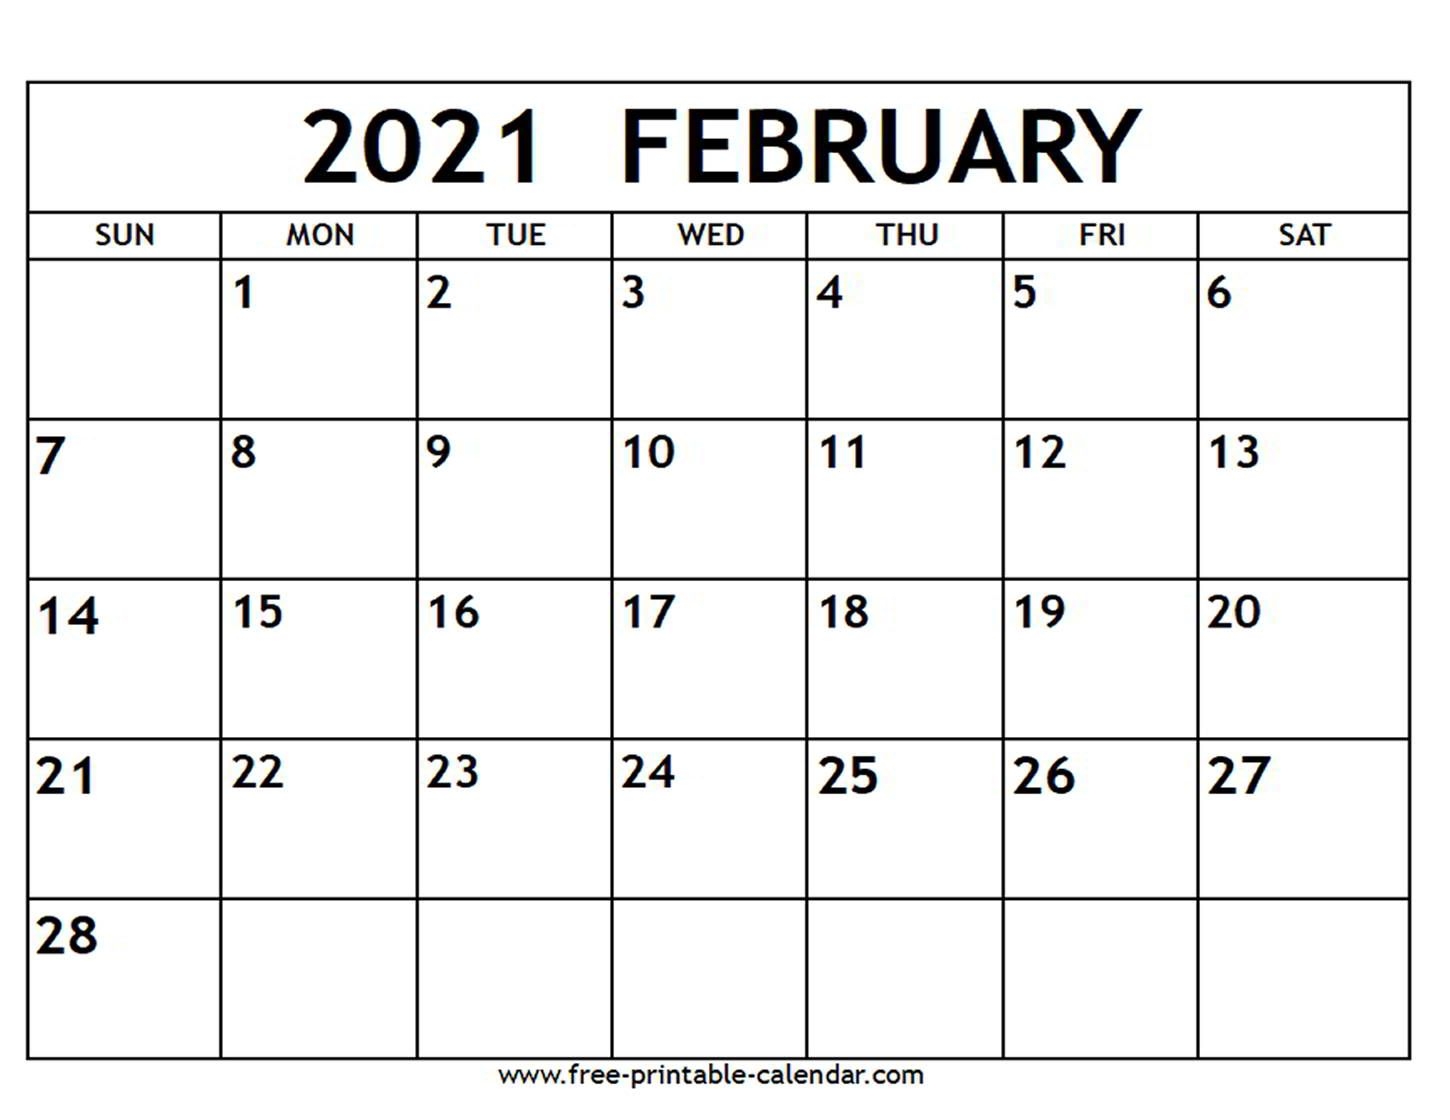 February 2021 Calendar - Free-Printable-Calendar